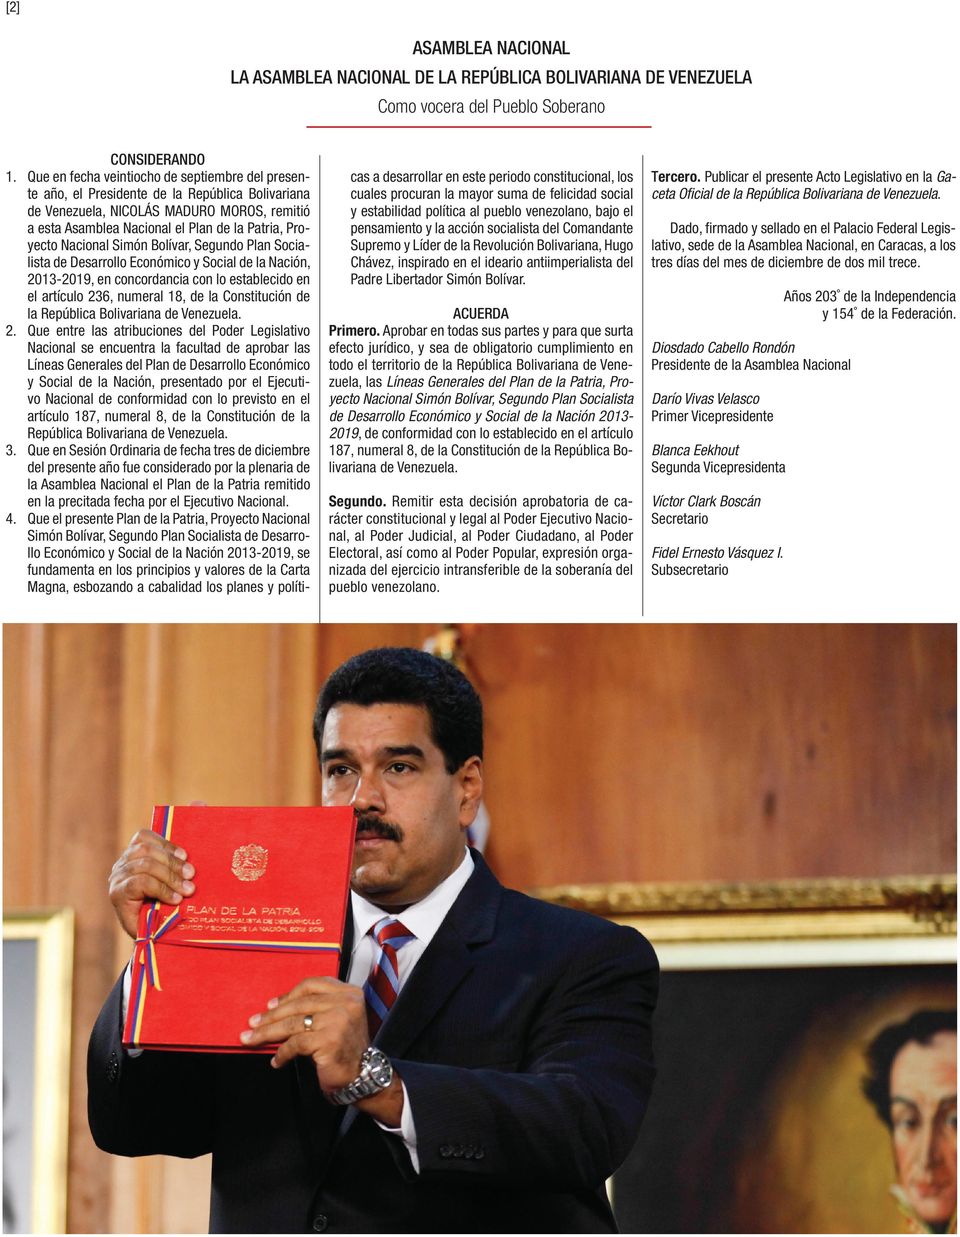 Nacional Simón Bolívar, Segundo Plan Socialista de Desarrollo Económico y Social de la Nación, 2013-2019, en concordancia con lo establecido en el artículo 236, numeral 18, de la Constitución de la